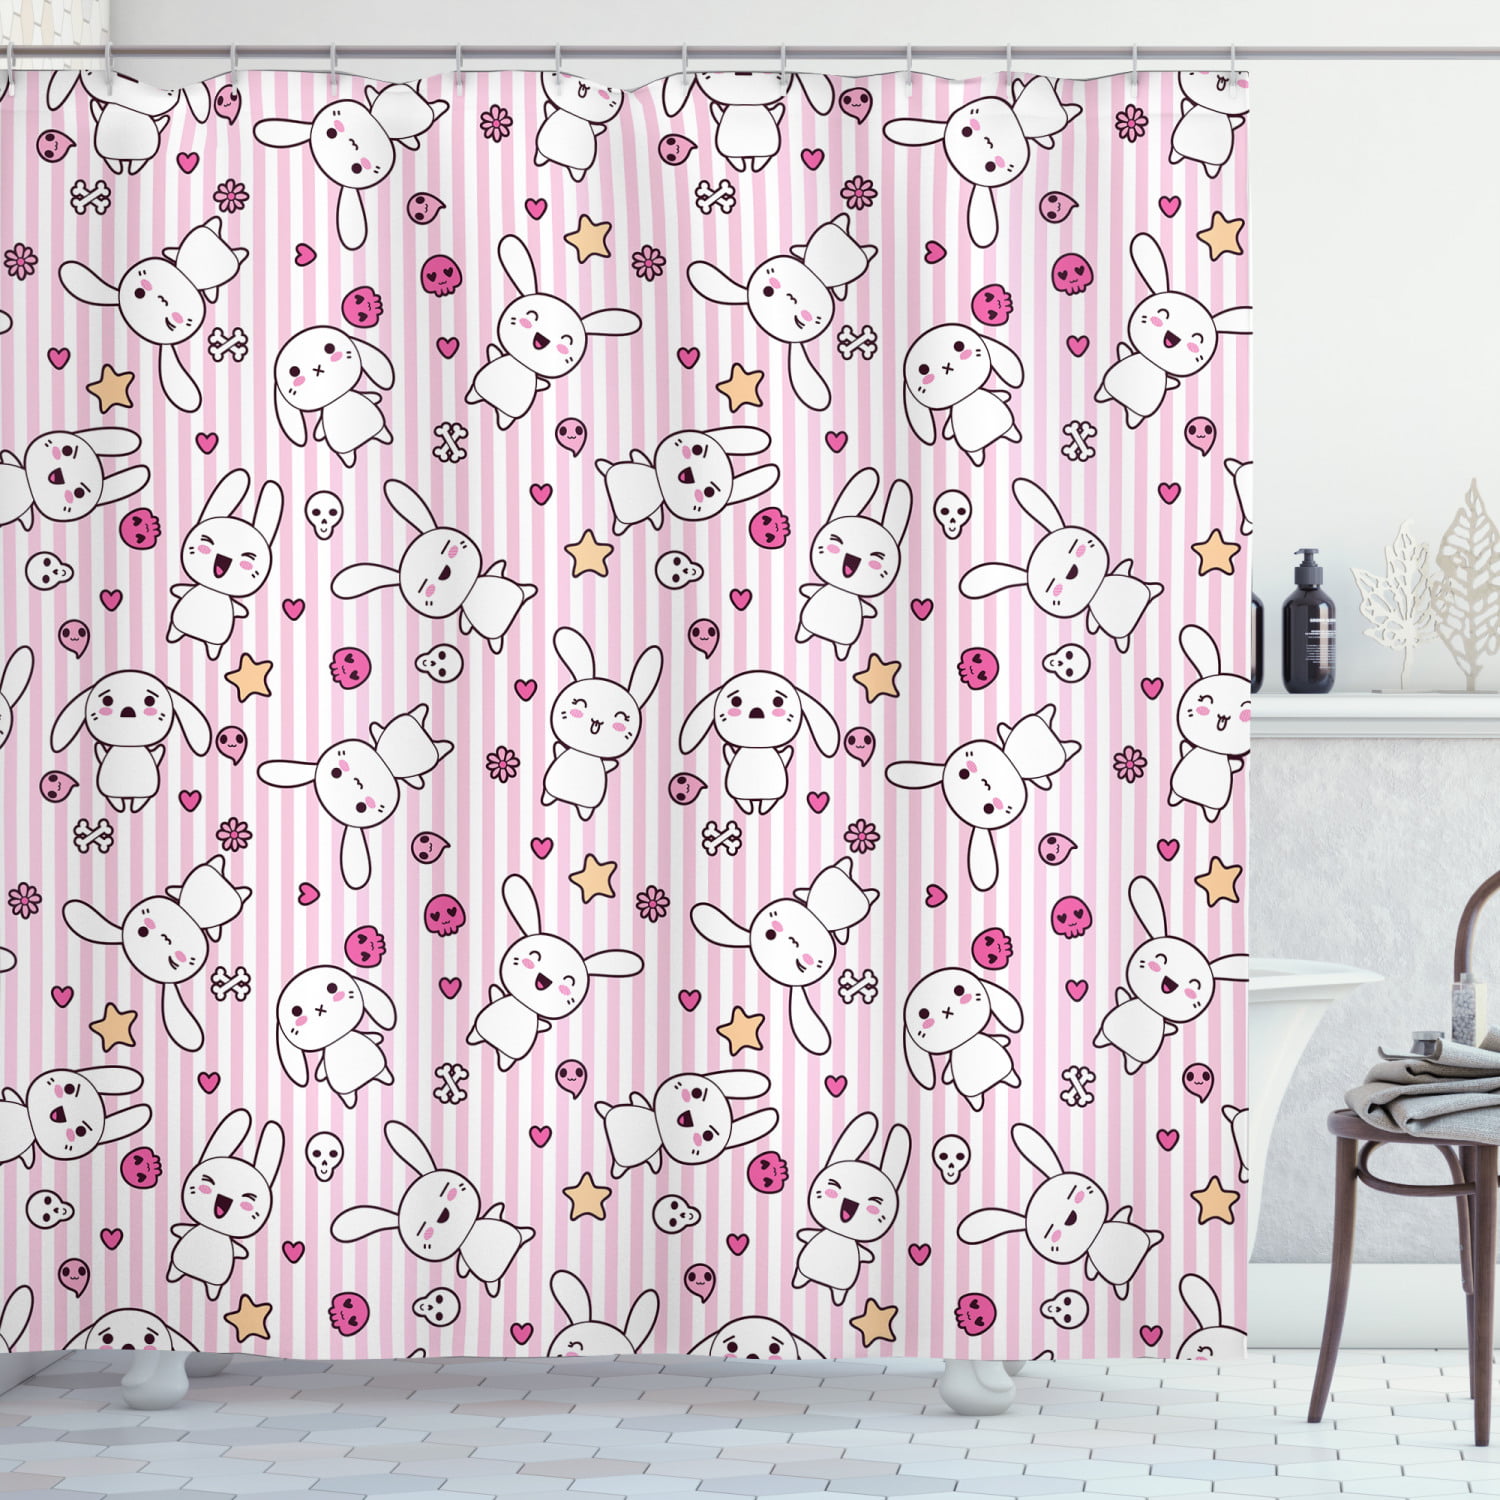 Scribble Waterproof Bathroom Polyester Shower Curtain Liner Water Resistant